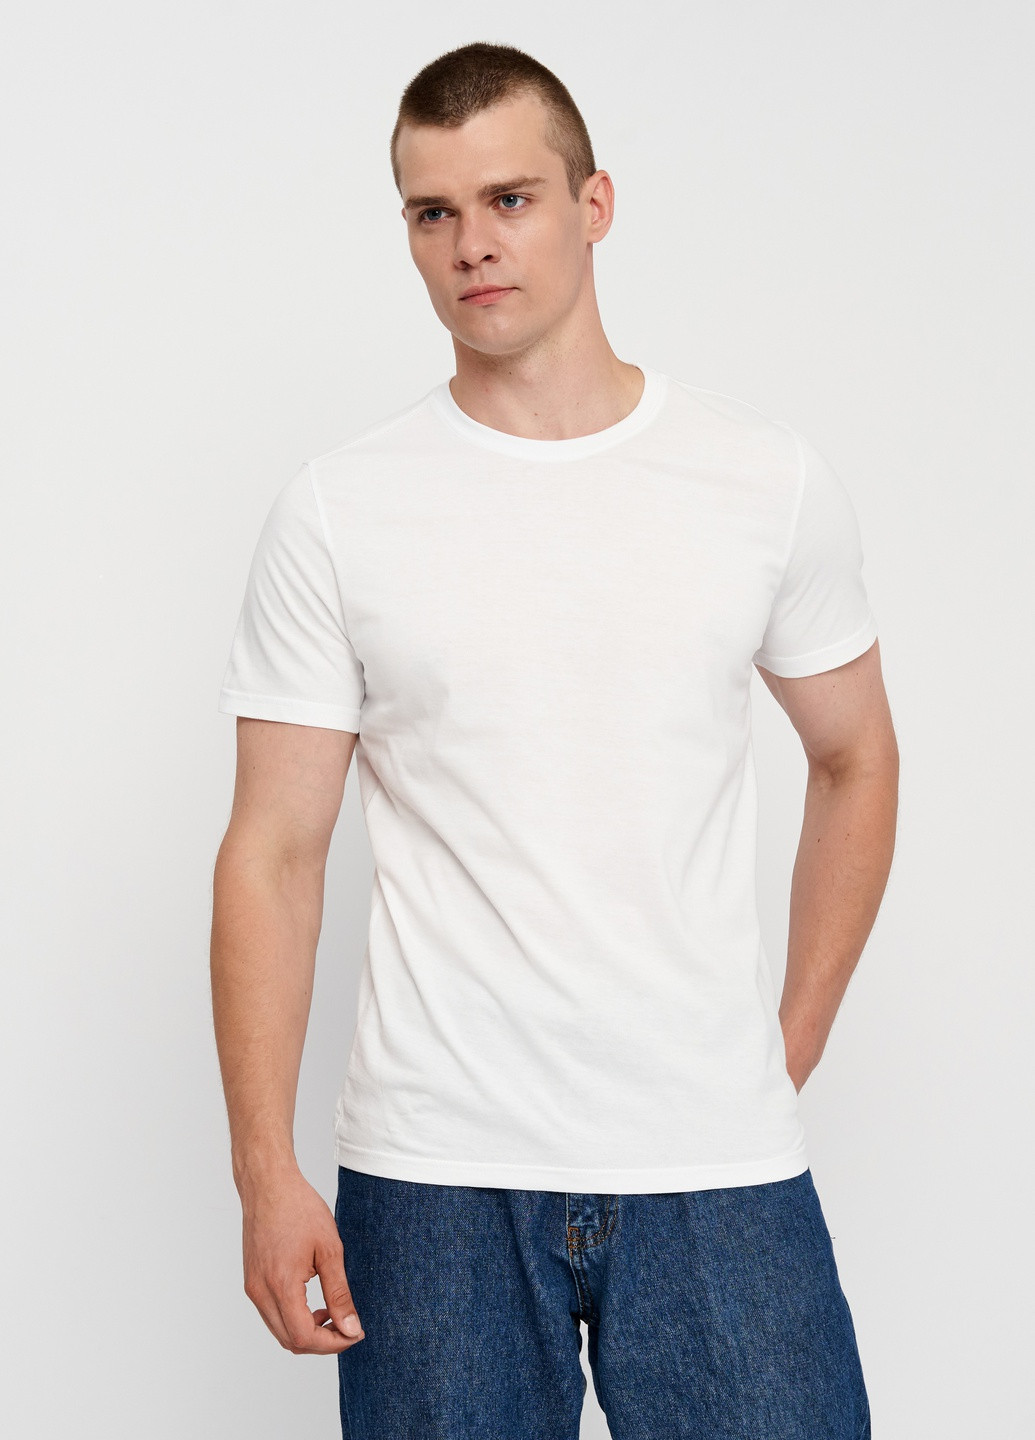 Біла футболка для чоловіків Роза